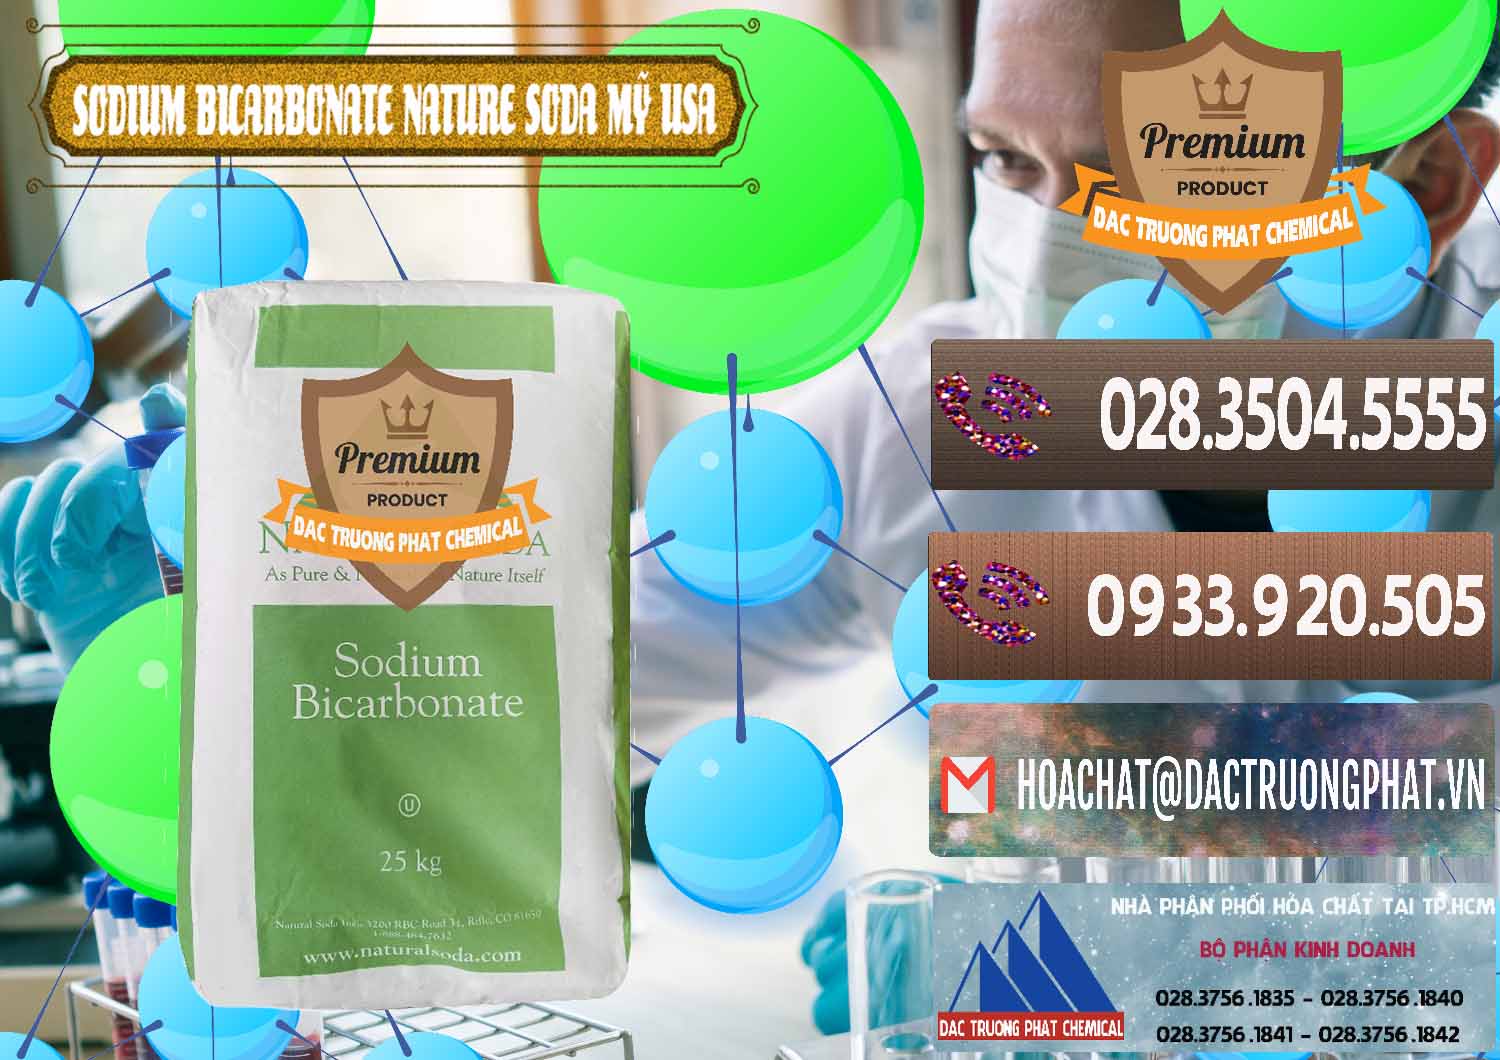 Nơi bán _ cung cấp Sodium Bicarbonate – Bicar NaHCO3 Food Grade Nature Soda Mỹ USA - 0256 - Chuyên phân phối và cung cấp hóa chất tại TP.HCM - hoachatviet.net